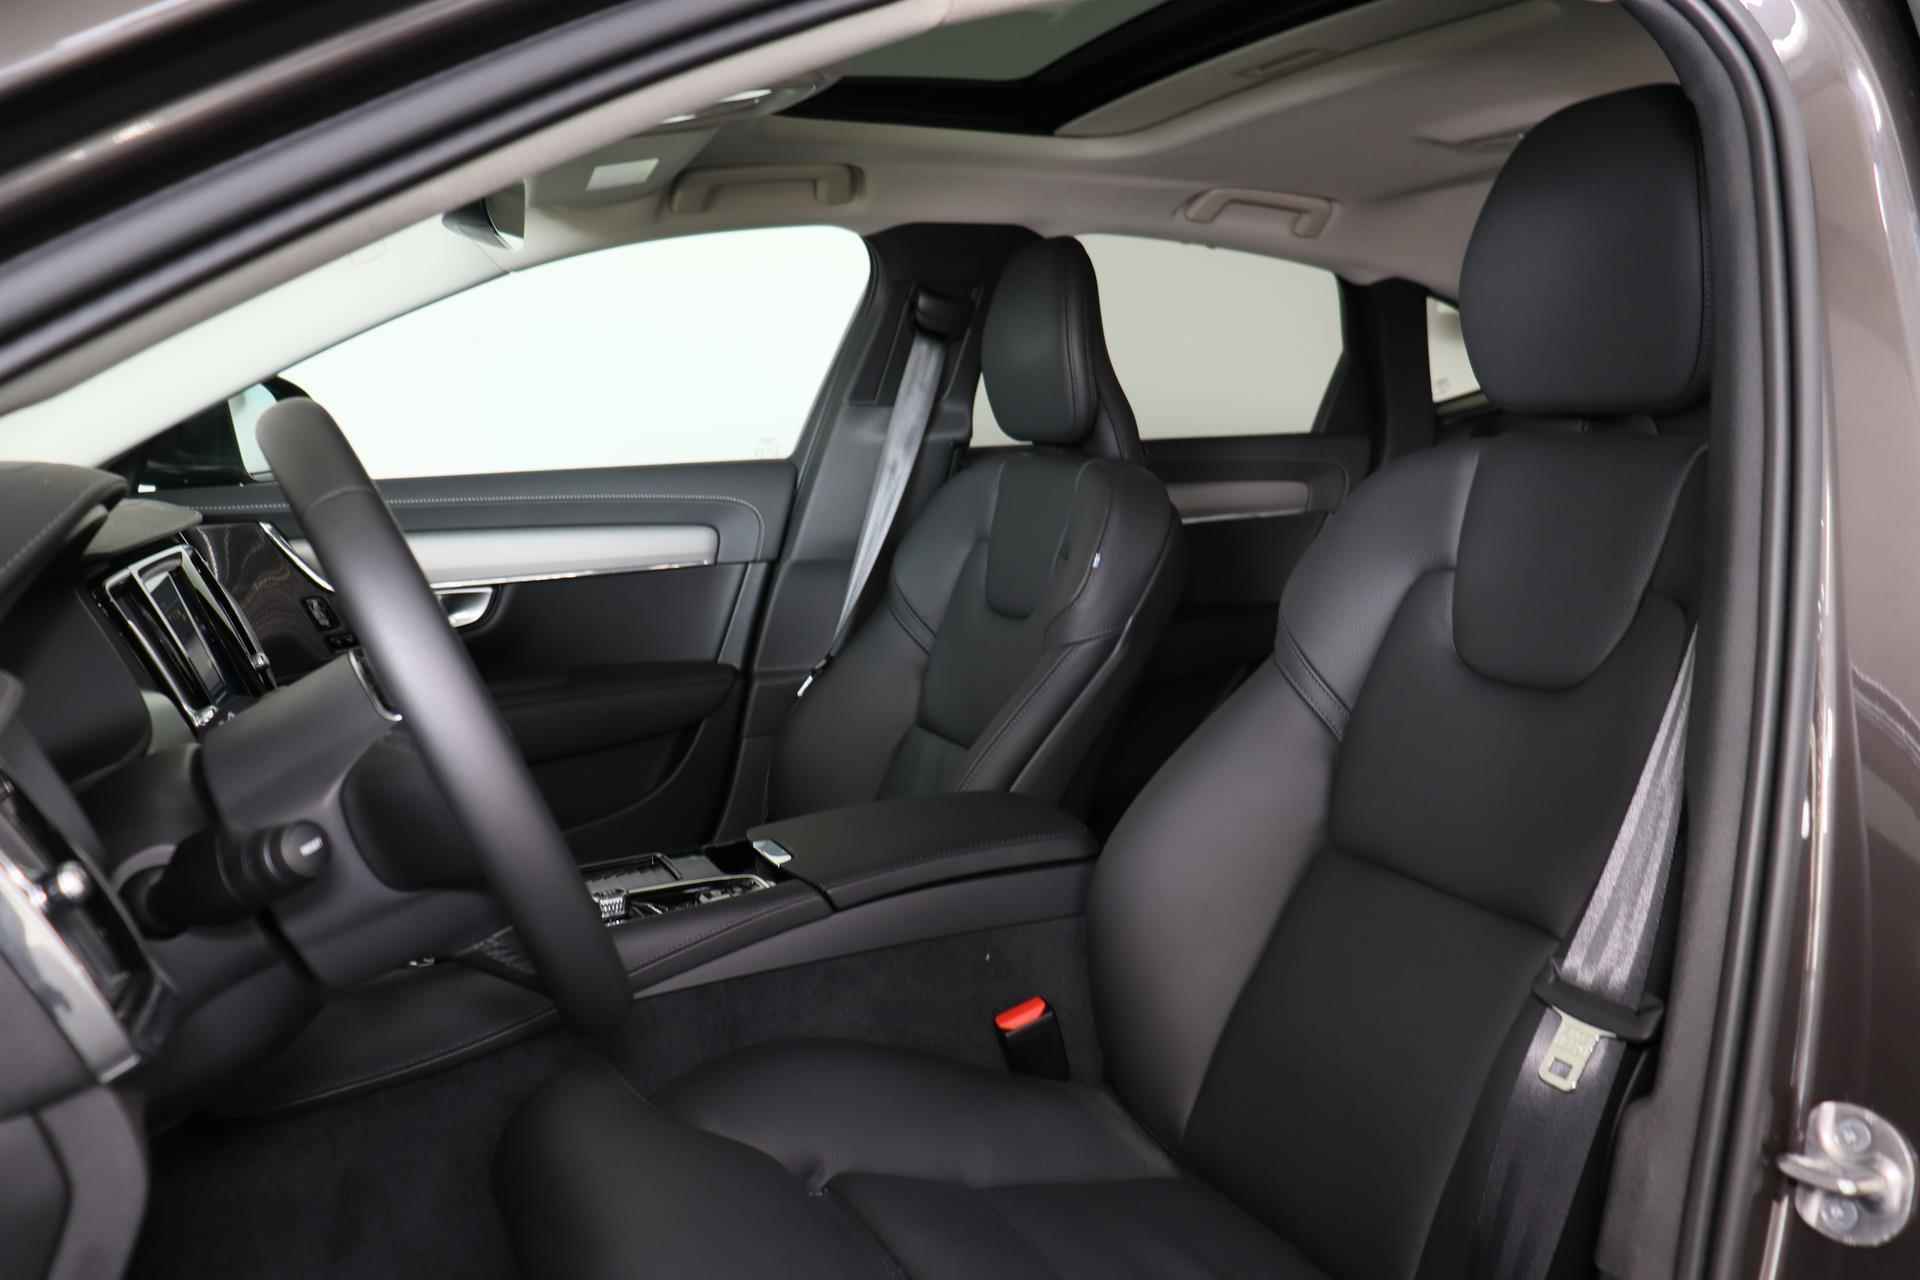 Volvo S90 T8 AWD Plus Bright - LONG RANGE - Panorama/schuifdak - IntelliSafe Assist & Surround - 360° Camera - Adaptieve LED koplampen - Verwarmde voorstoelen, stuur & achterbank - Parkeersensoren voor & achter - Elektr. bedienb. voorstoelen met geheugen - Extra getint glas - Elektr. inklapbare trekhaak - 19' LMV - 21/27